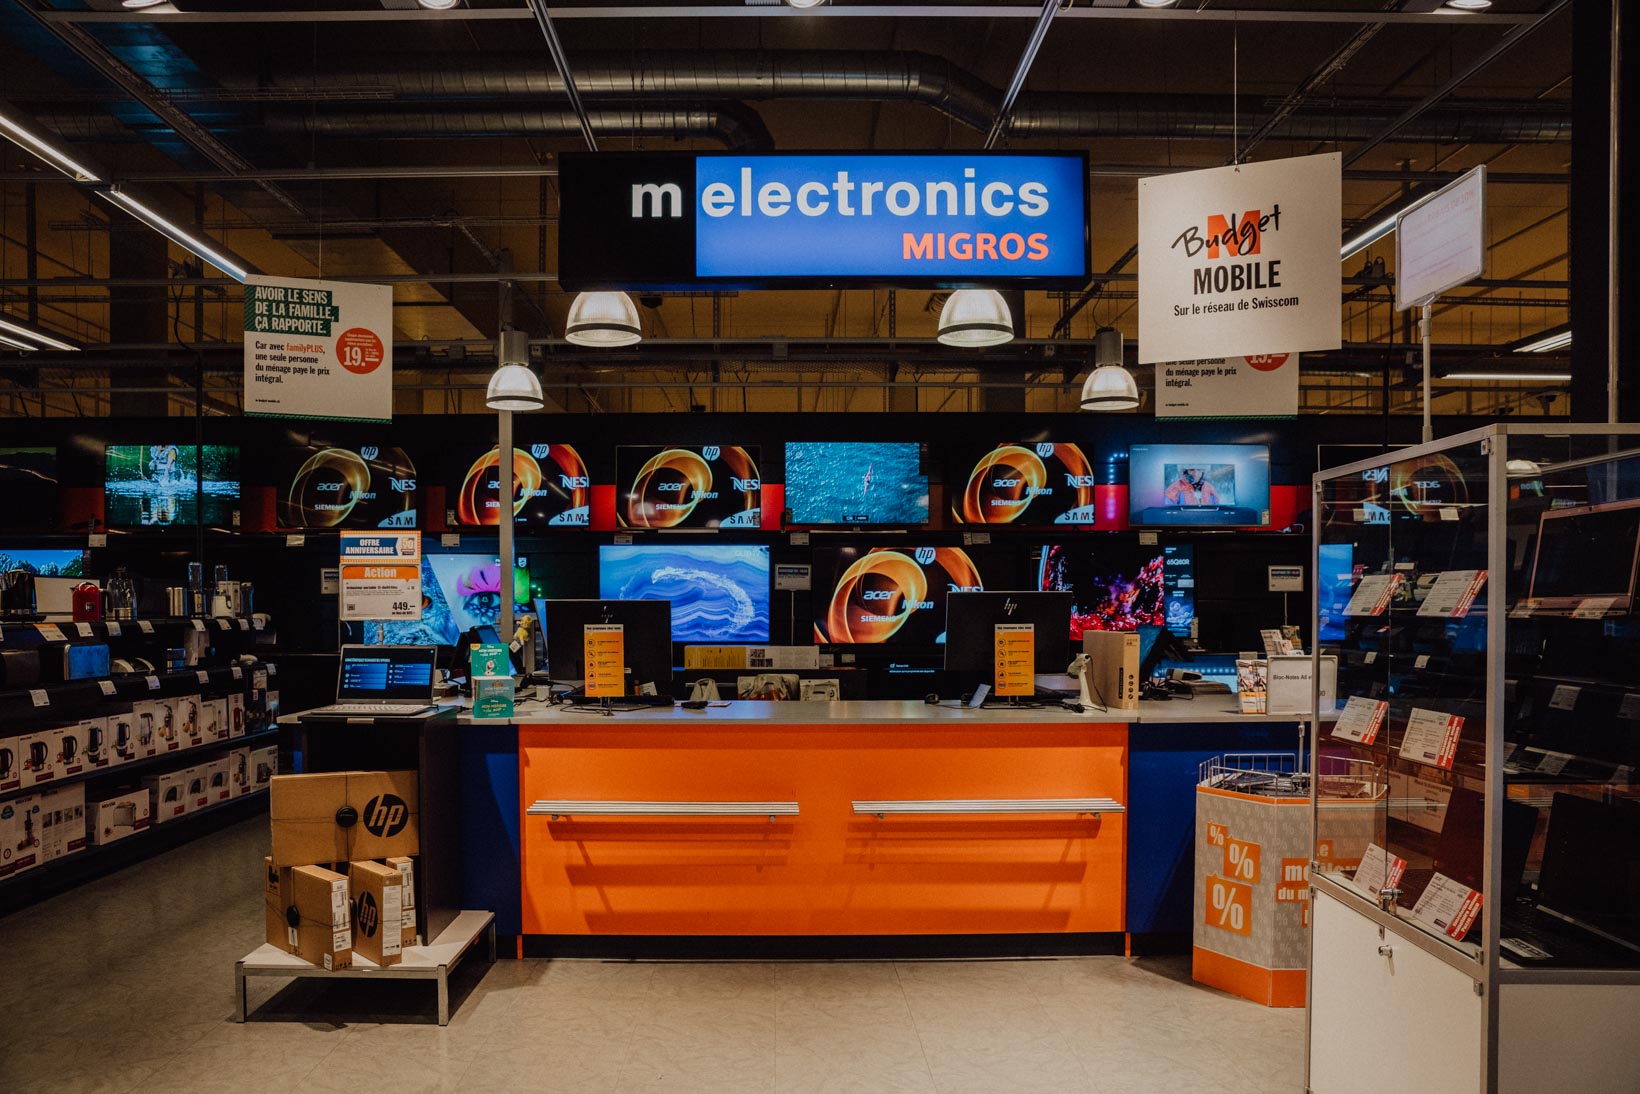 M electronics